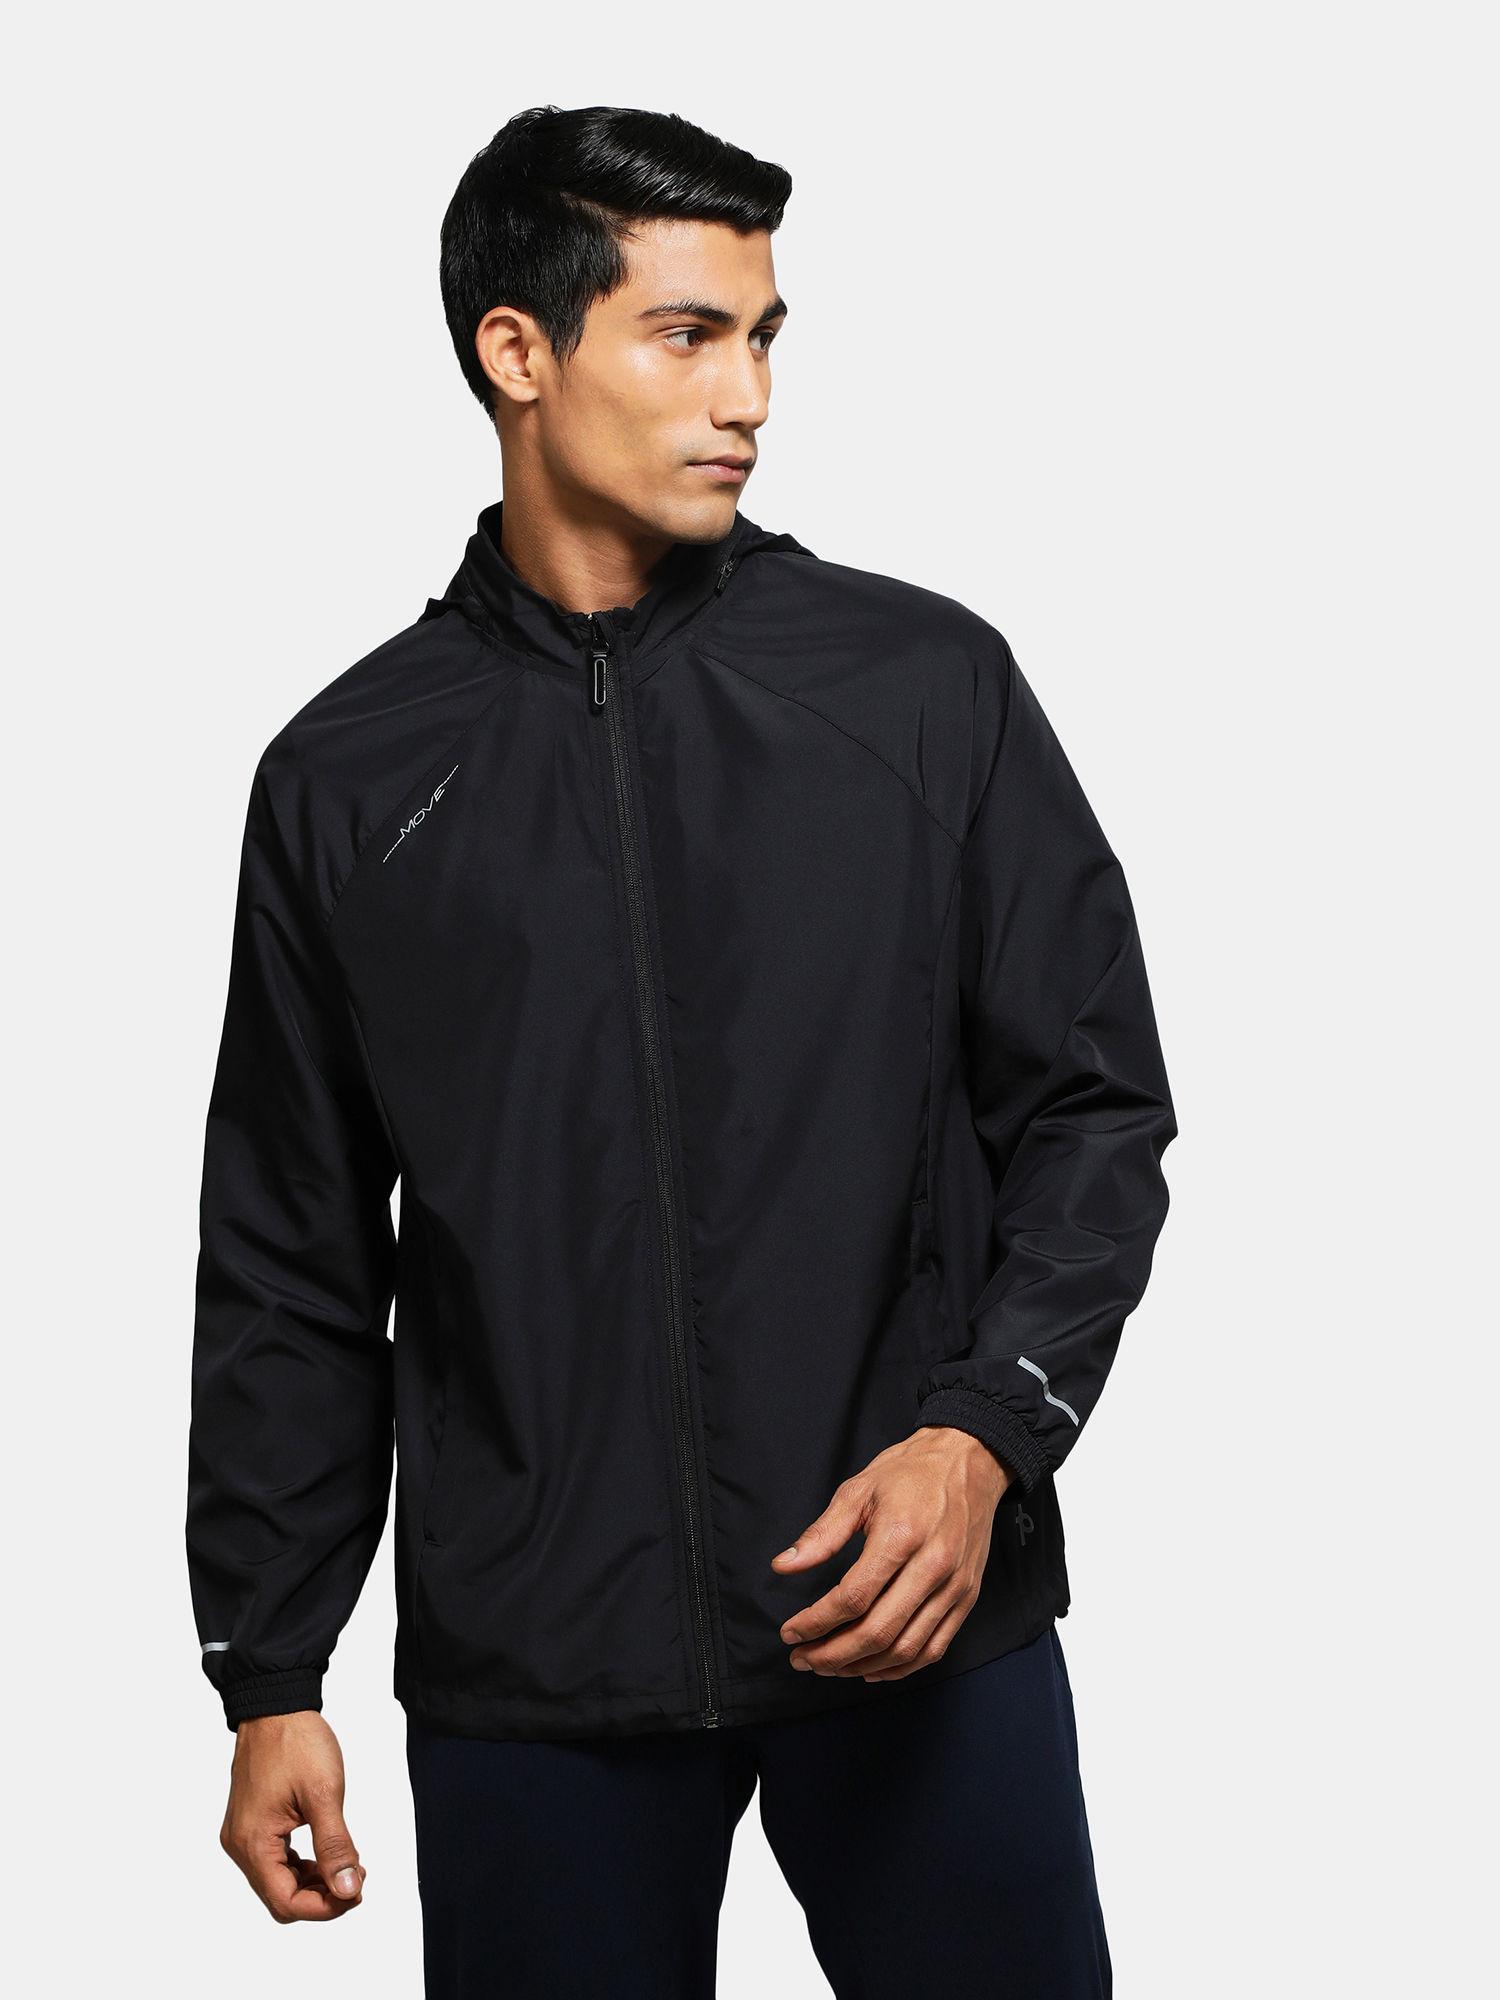 mv40 mens microfiber water resistant convertible hoodie jacket - black